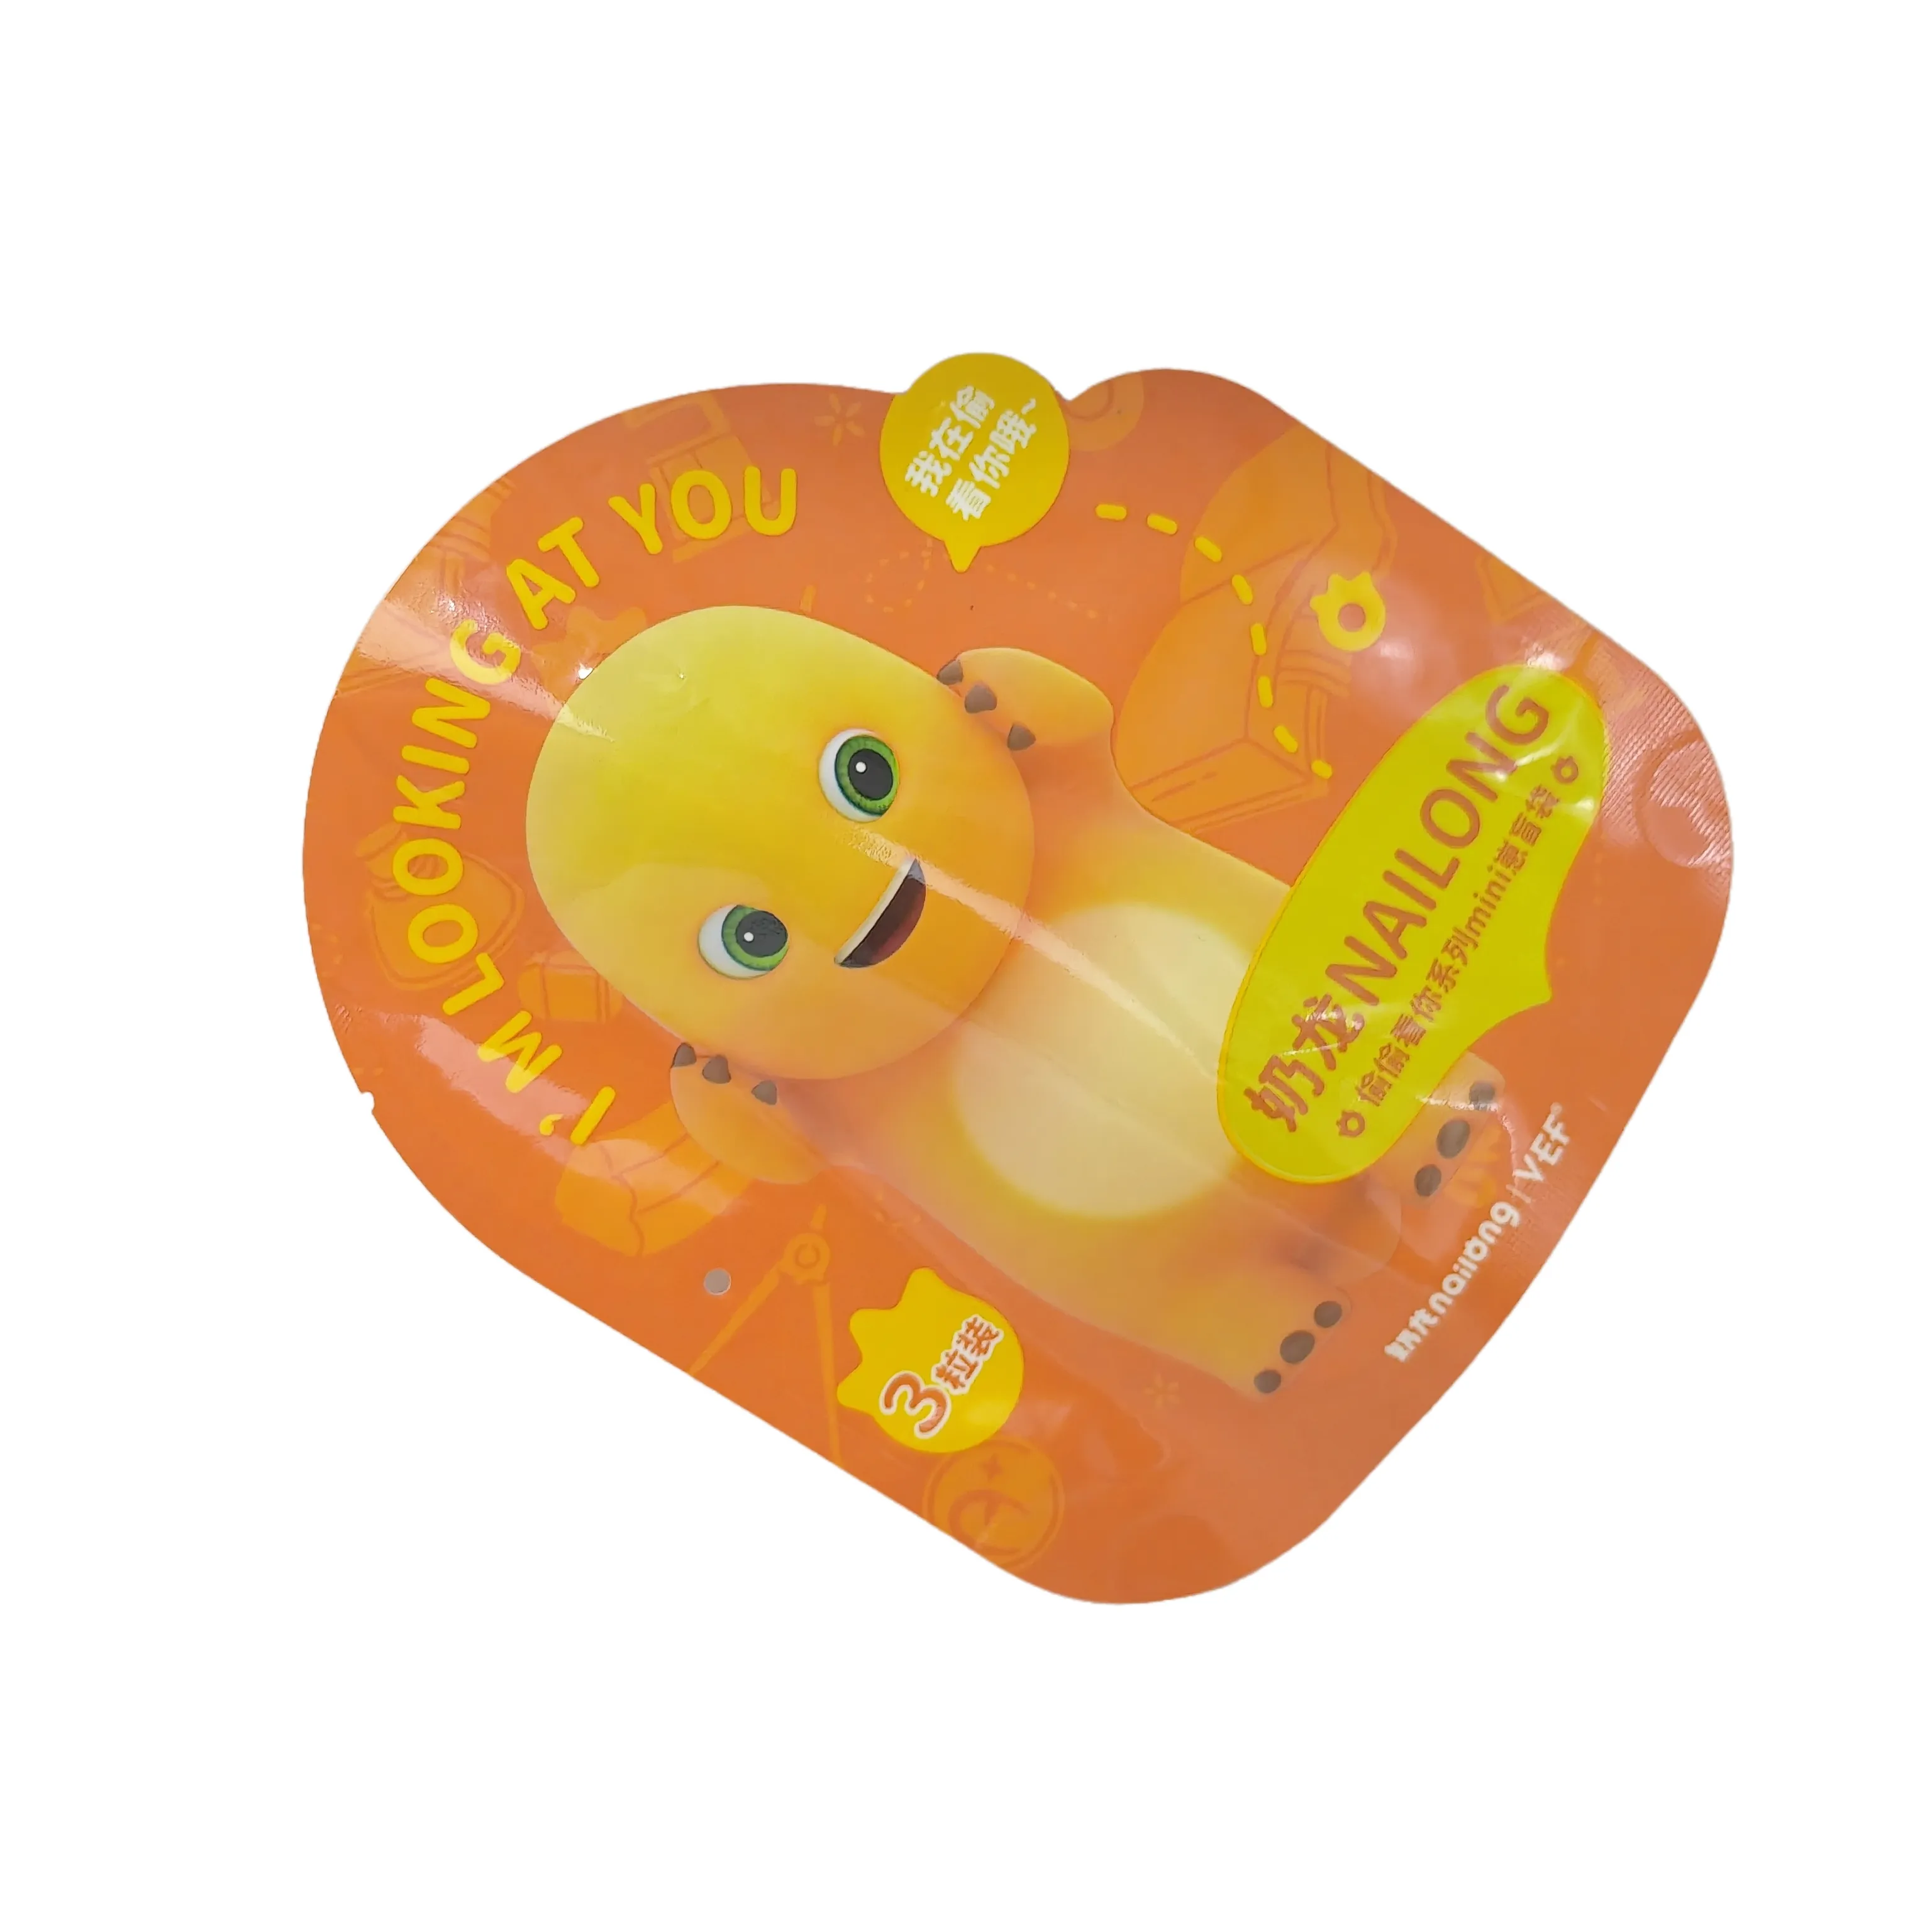 Bolsa holográfica a prueba de niños troquelada personalizada, a prueba de olores, especiales de forma gomitas Irregular, bolsas de Mylar de embalaje comestible de 3,5g